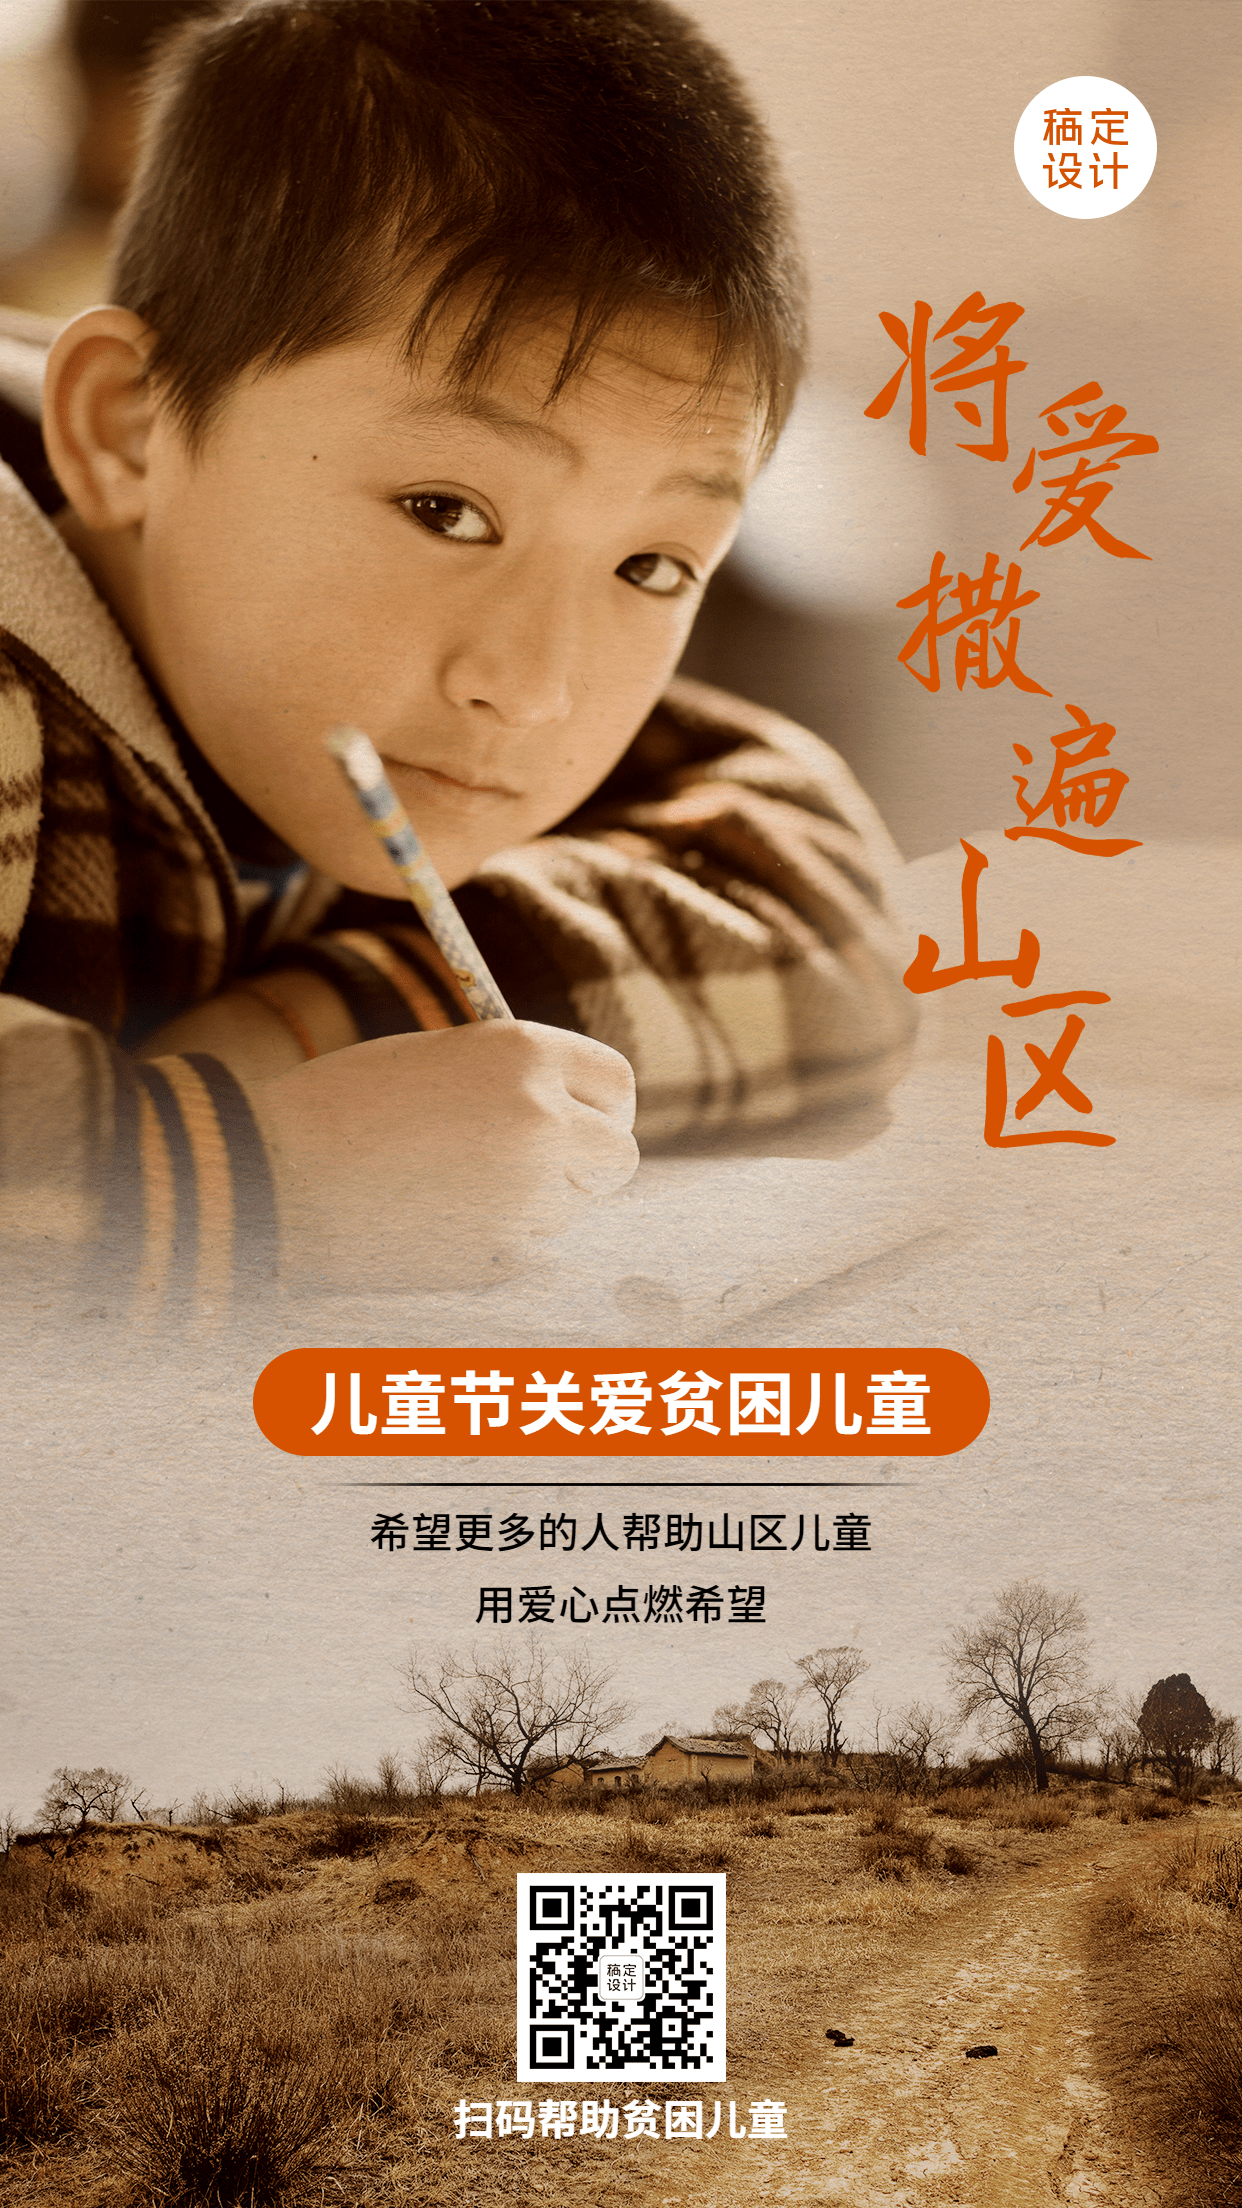 六一儿童节关爱山区贫困儿童公益宣传海报